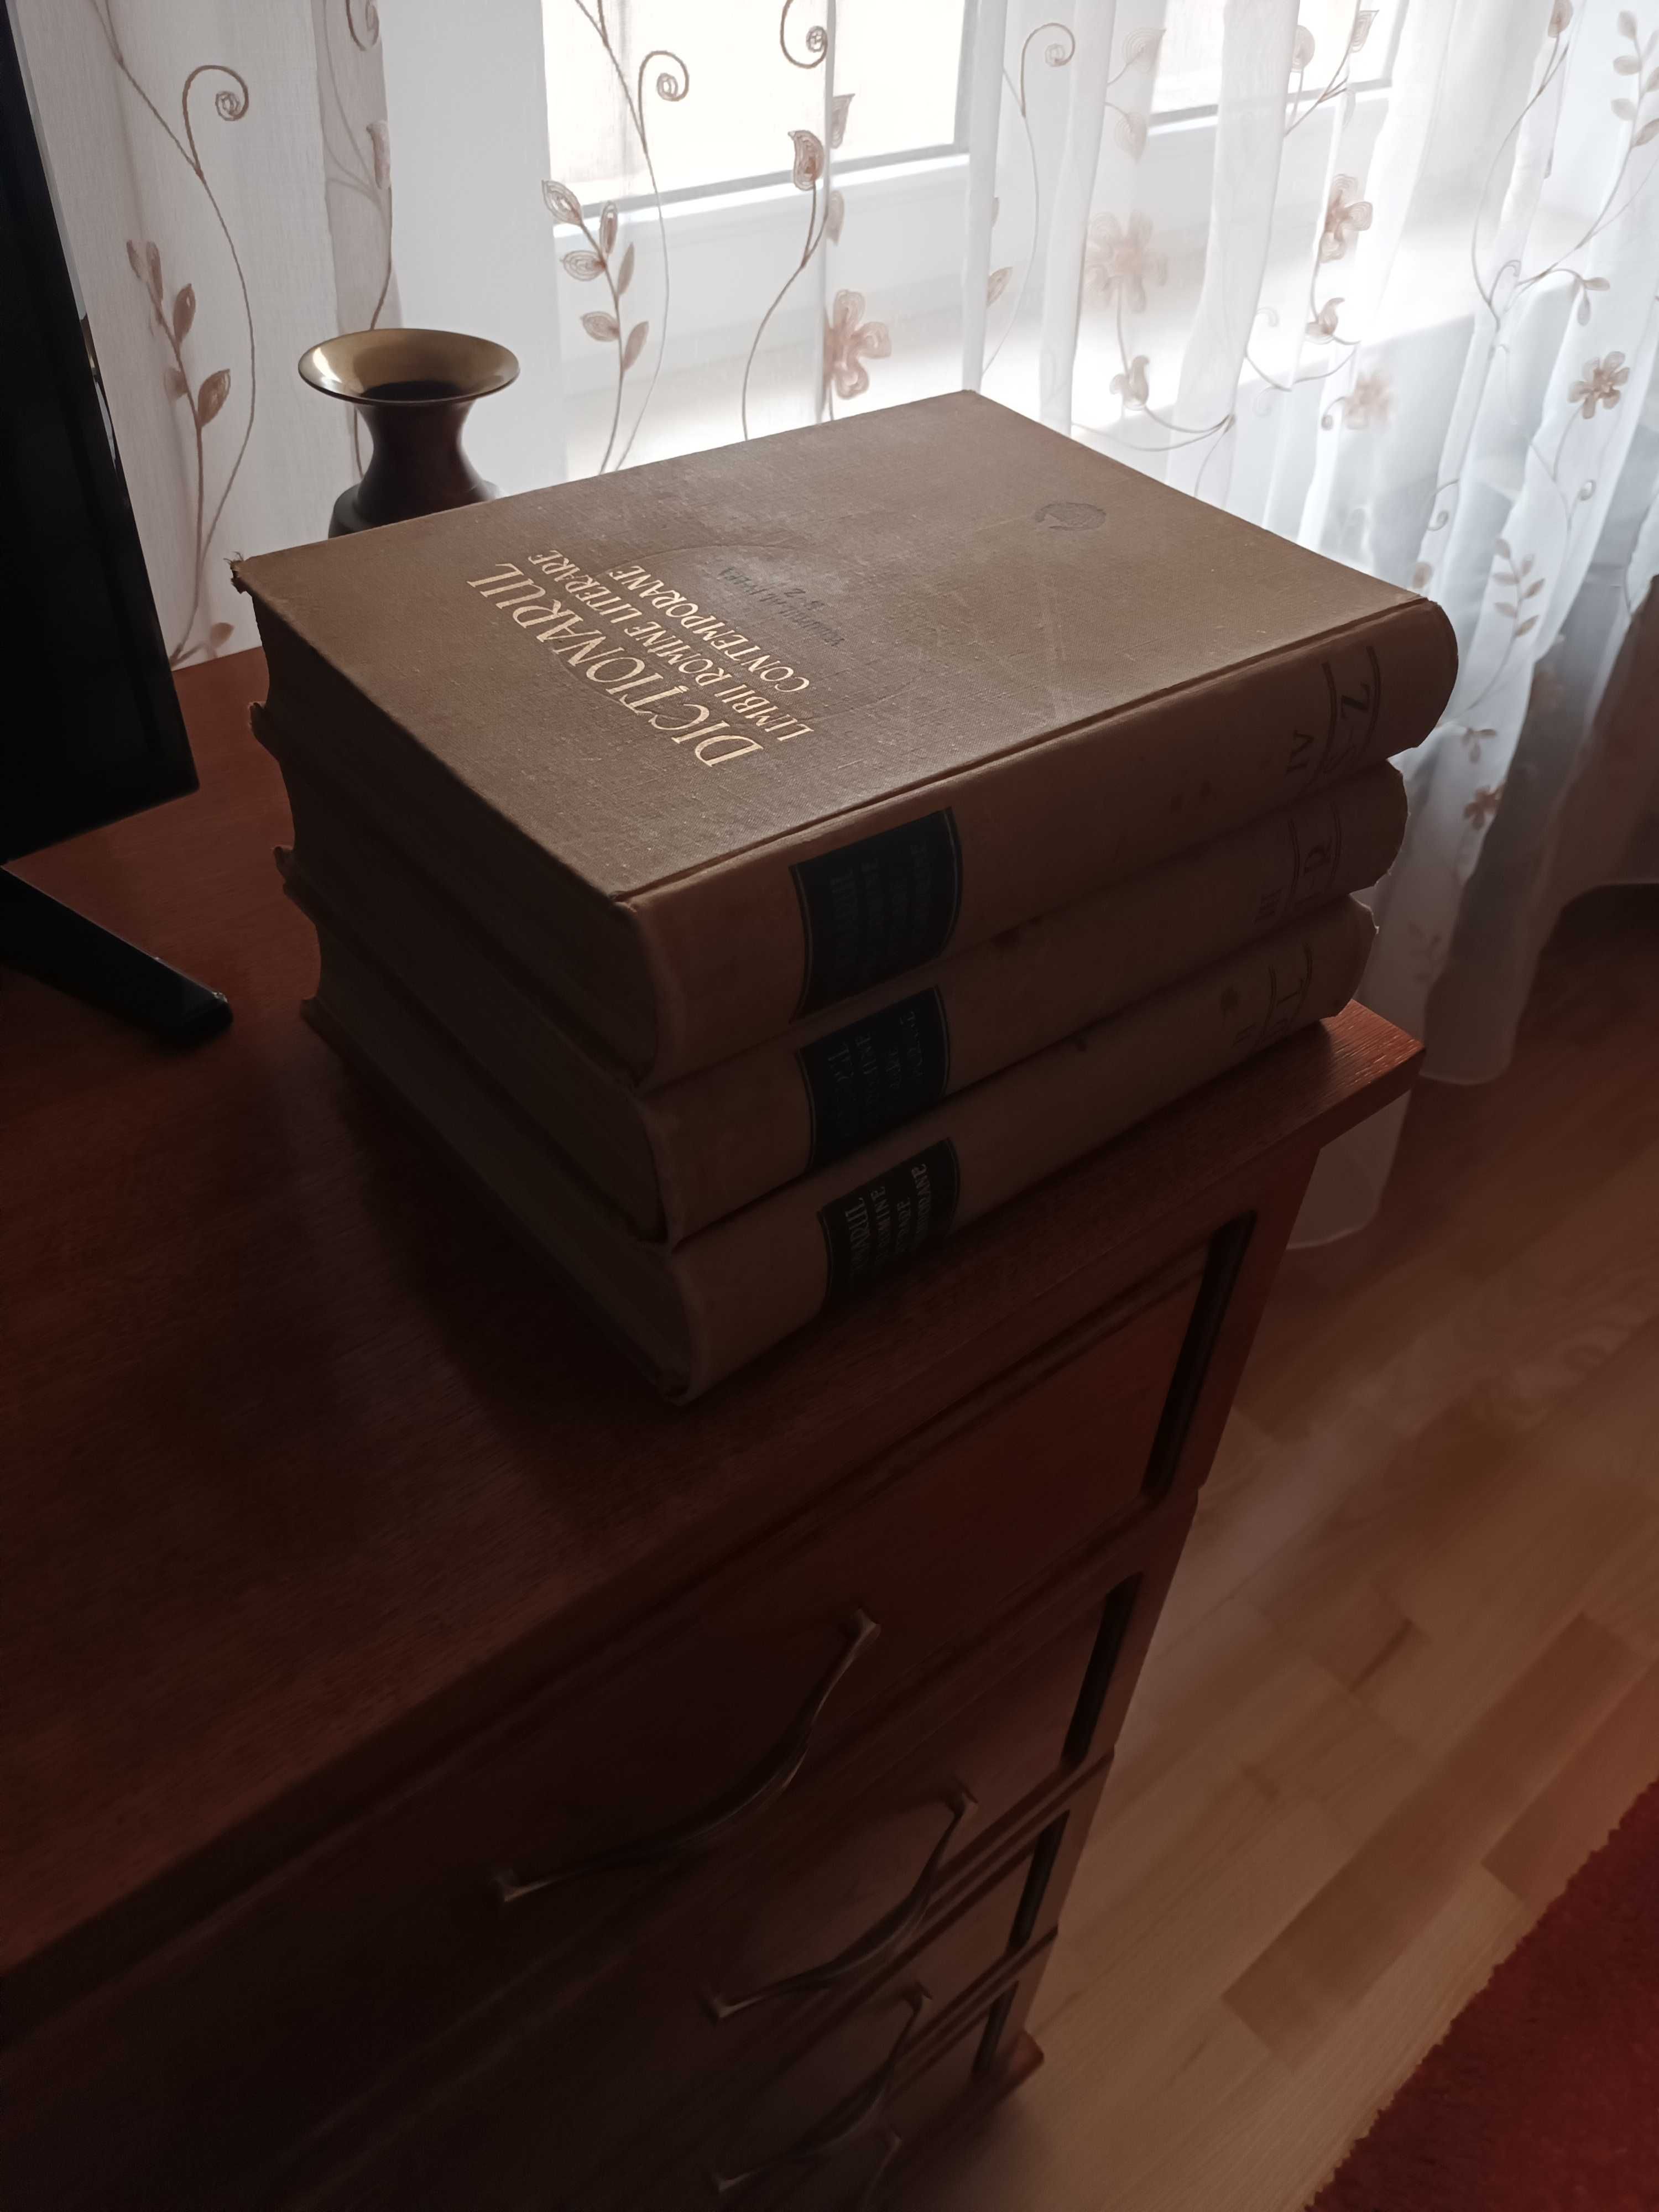 dictionarul limbii romane literare contemporane - 3 volume